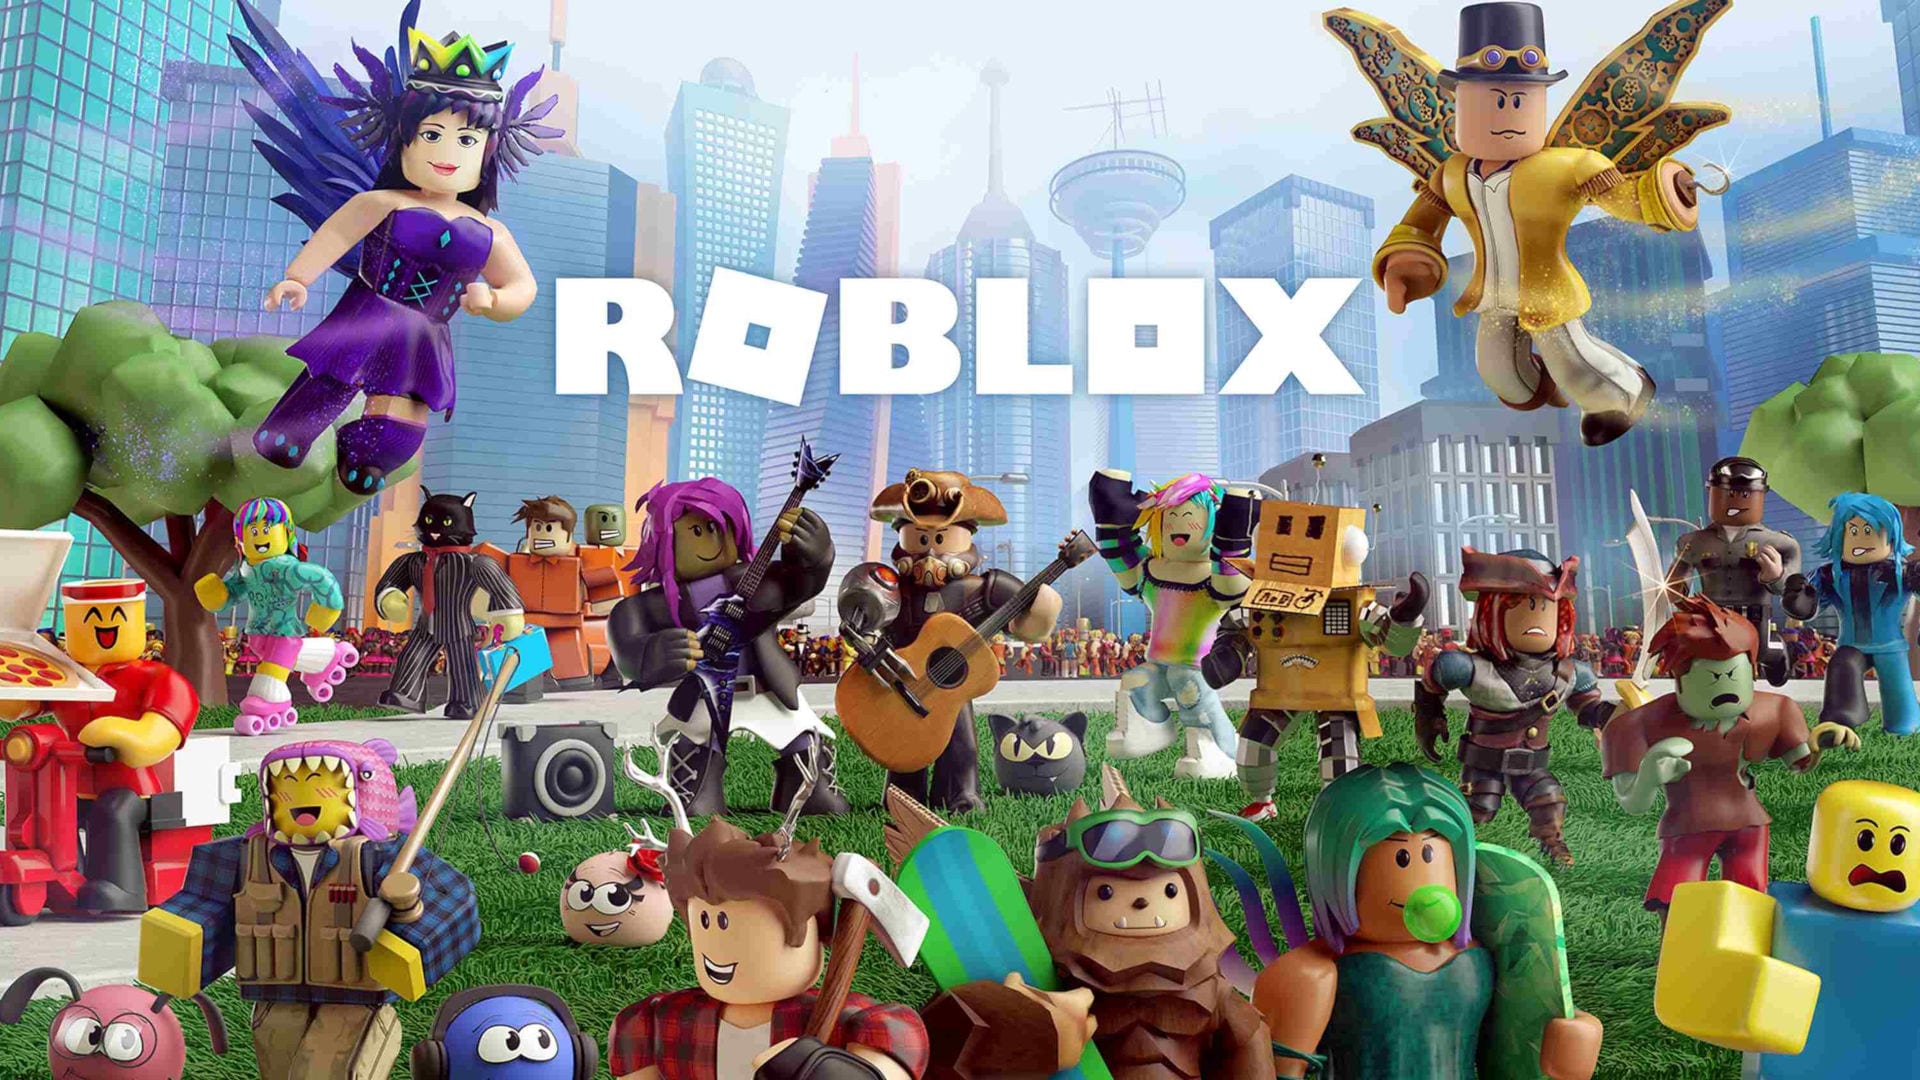 Aprenda a Ganhar 1000 Robux de Graça no Roblox – Dicas de Games – Confira  os lançamentos de games e macetes geniais